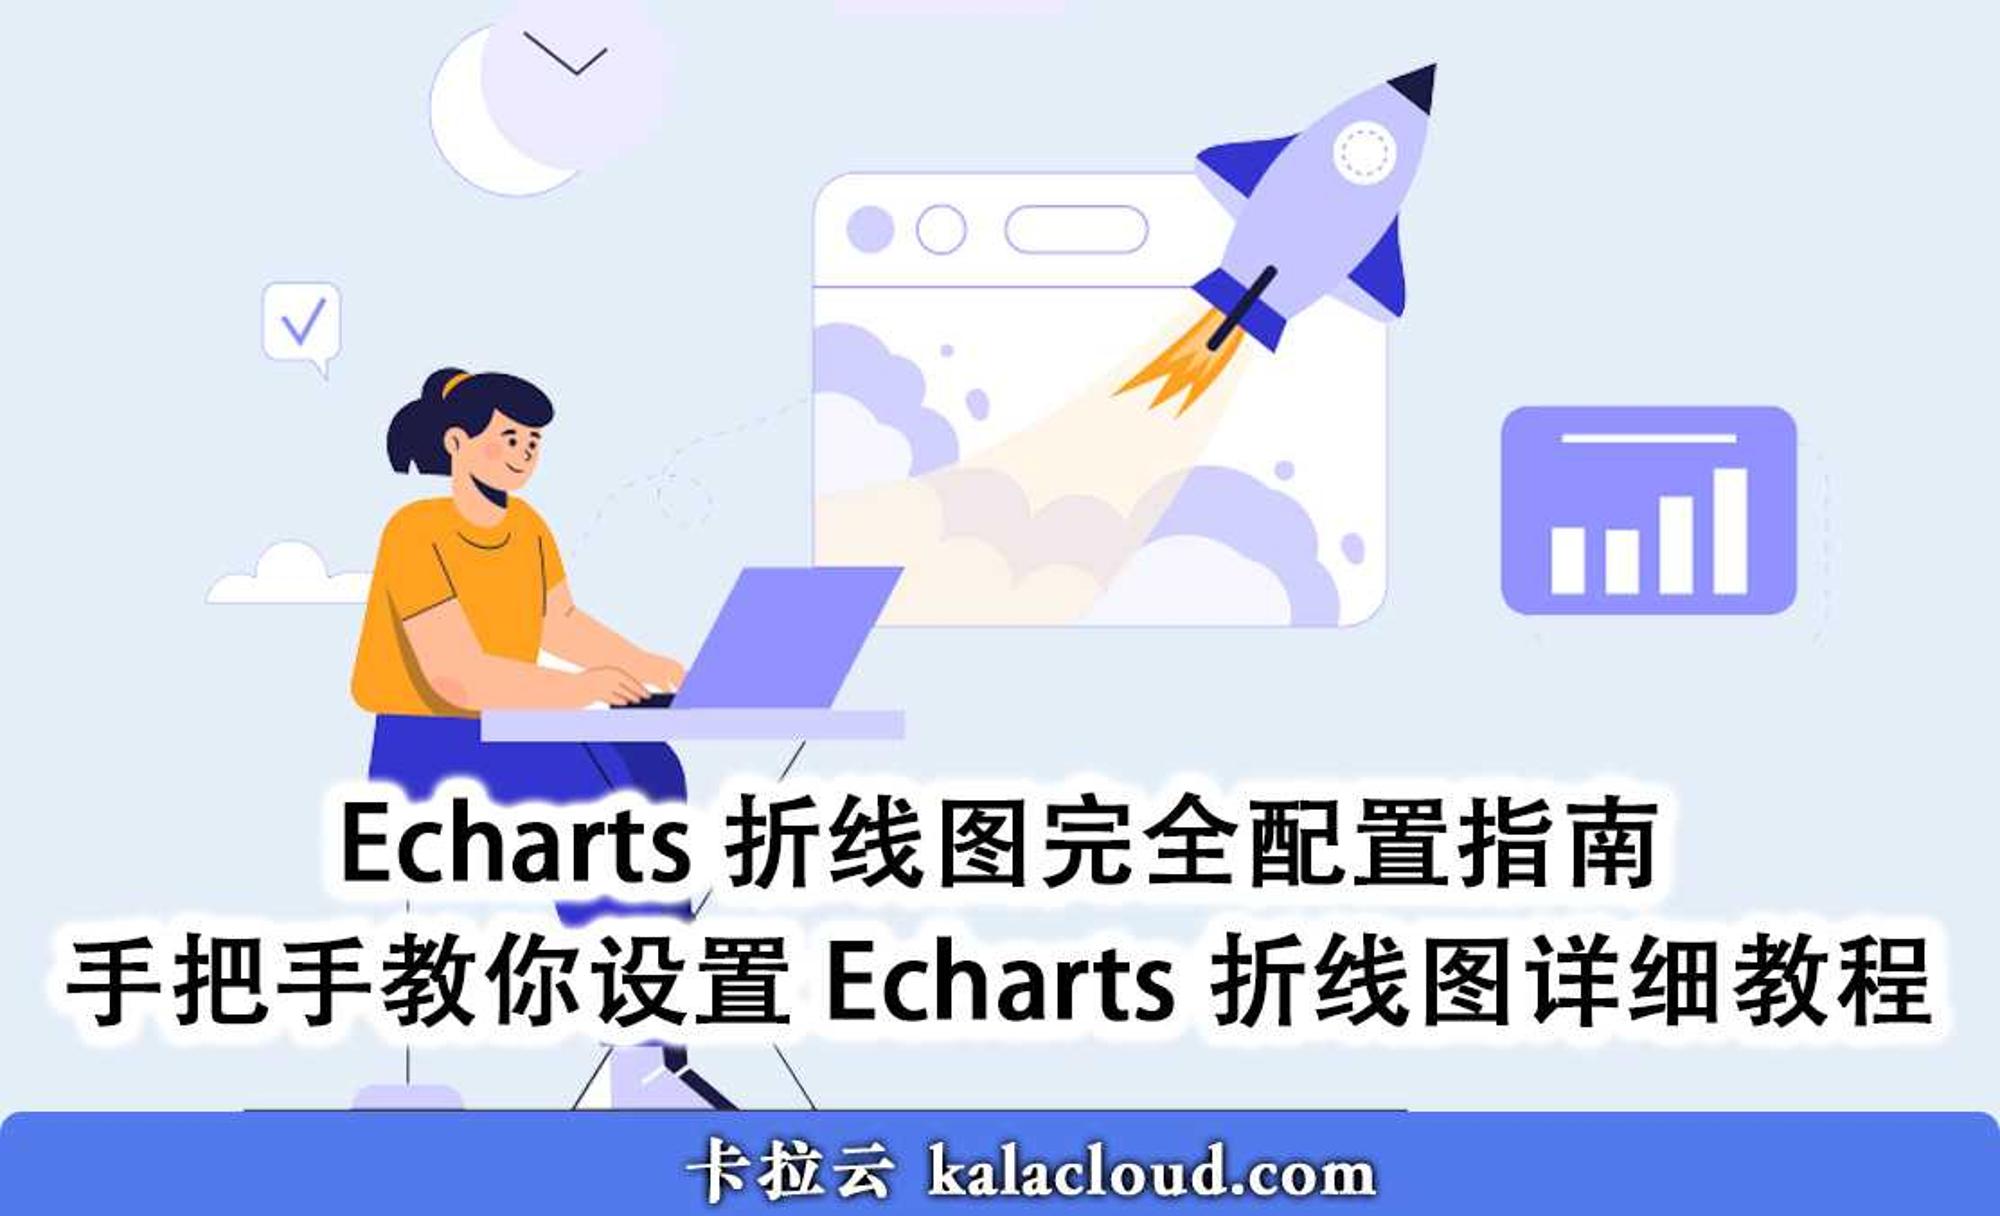 Echarts 折线图完全配置指南 - 手把手教你设置 Echarts 折线图详细教程